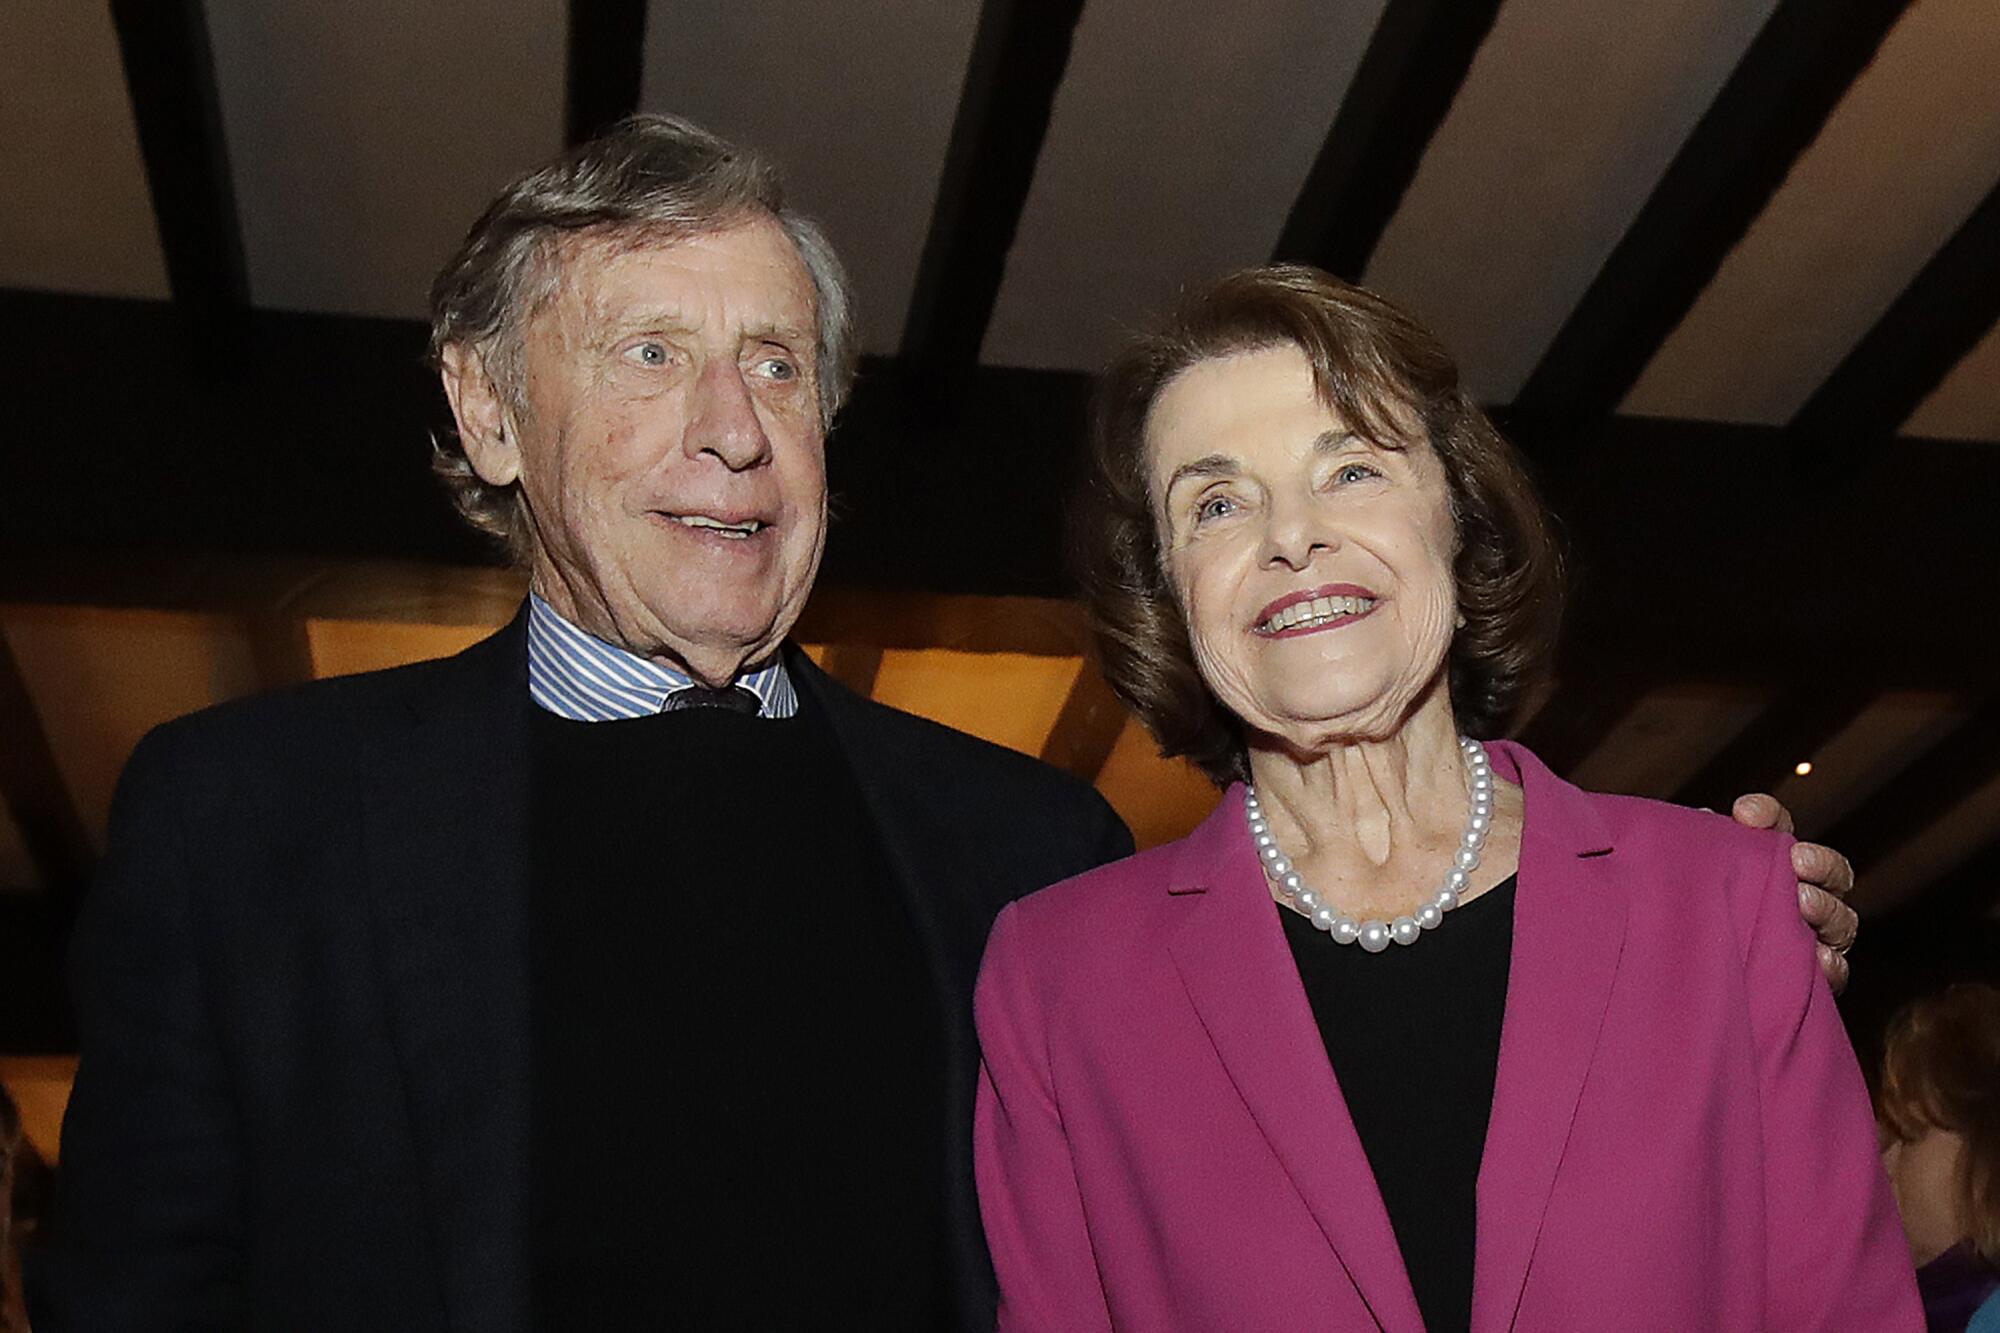 Sen. Dianne Feinstein and husband Richard Blum smiling, his arm around her shoulders